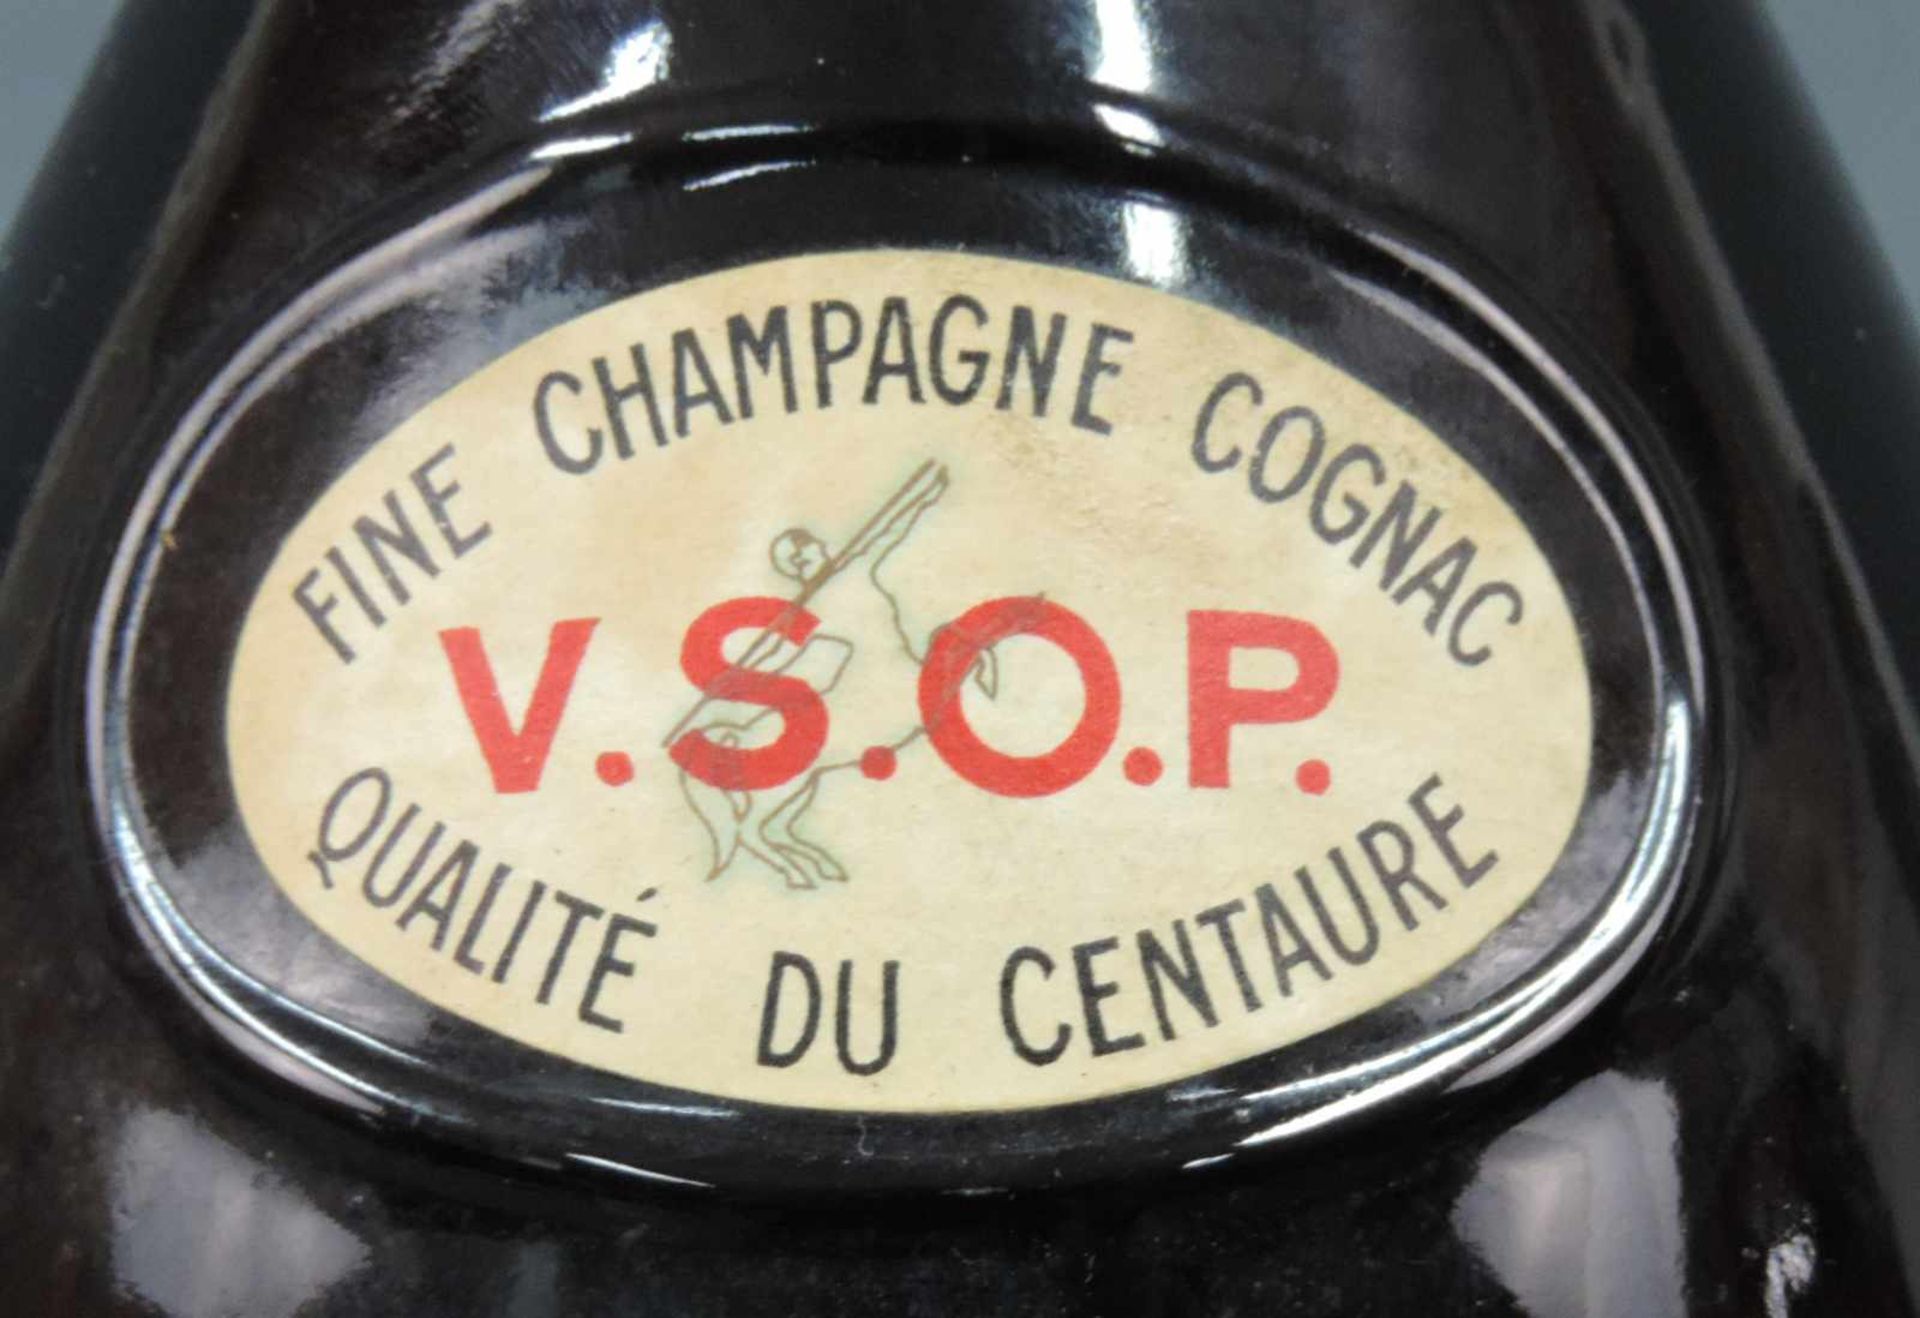 E. Remy Martin & Co Fine Champagne Cognac VSOP Qualité du Centaure. Grand format. Inhalt circa 5 - Bild 4 aus 9